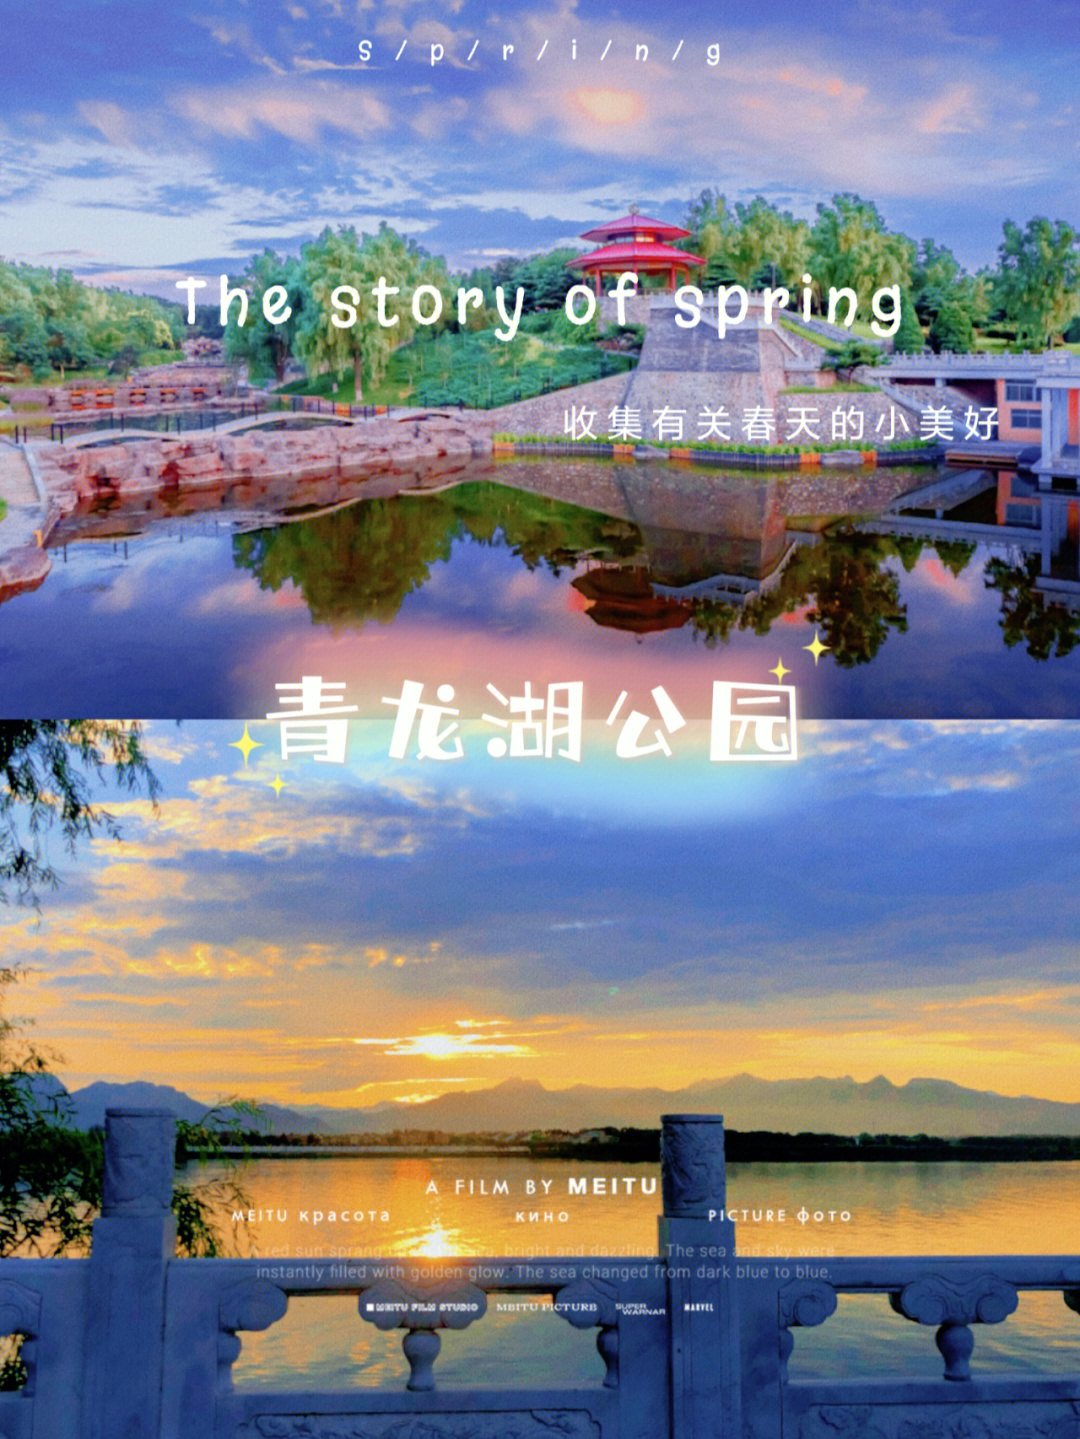 北京青龙湖公园门票图片